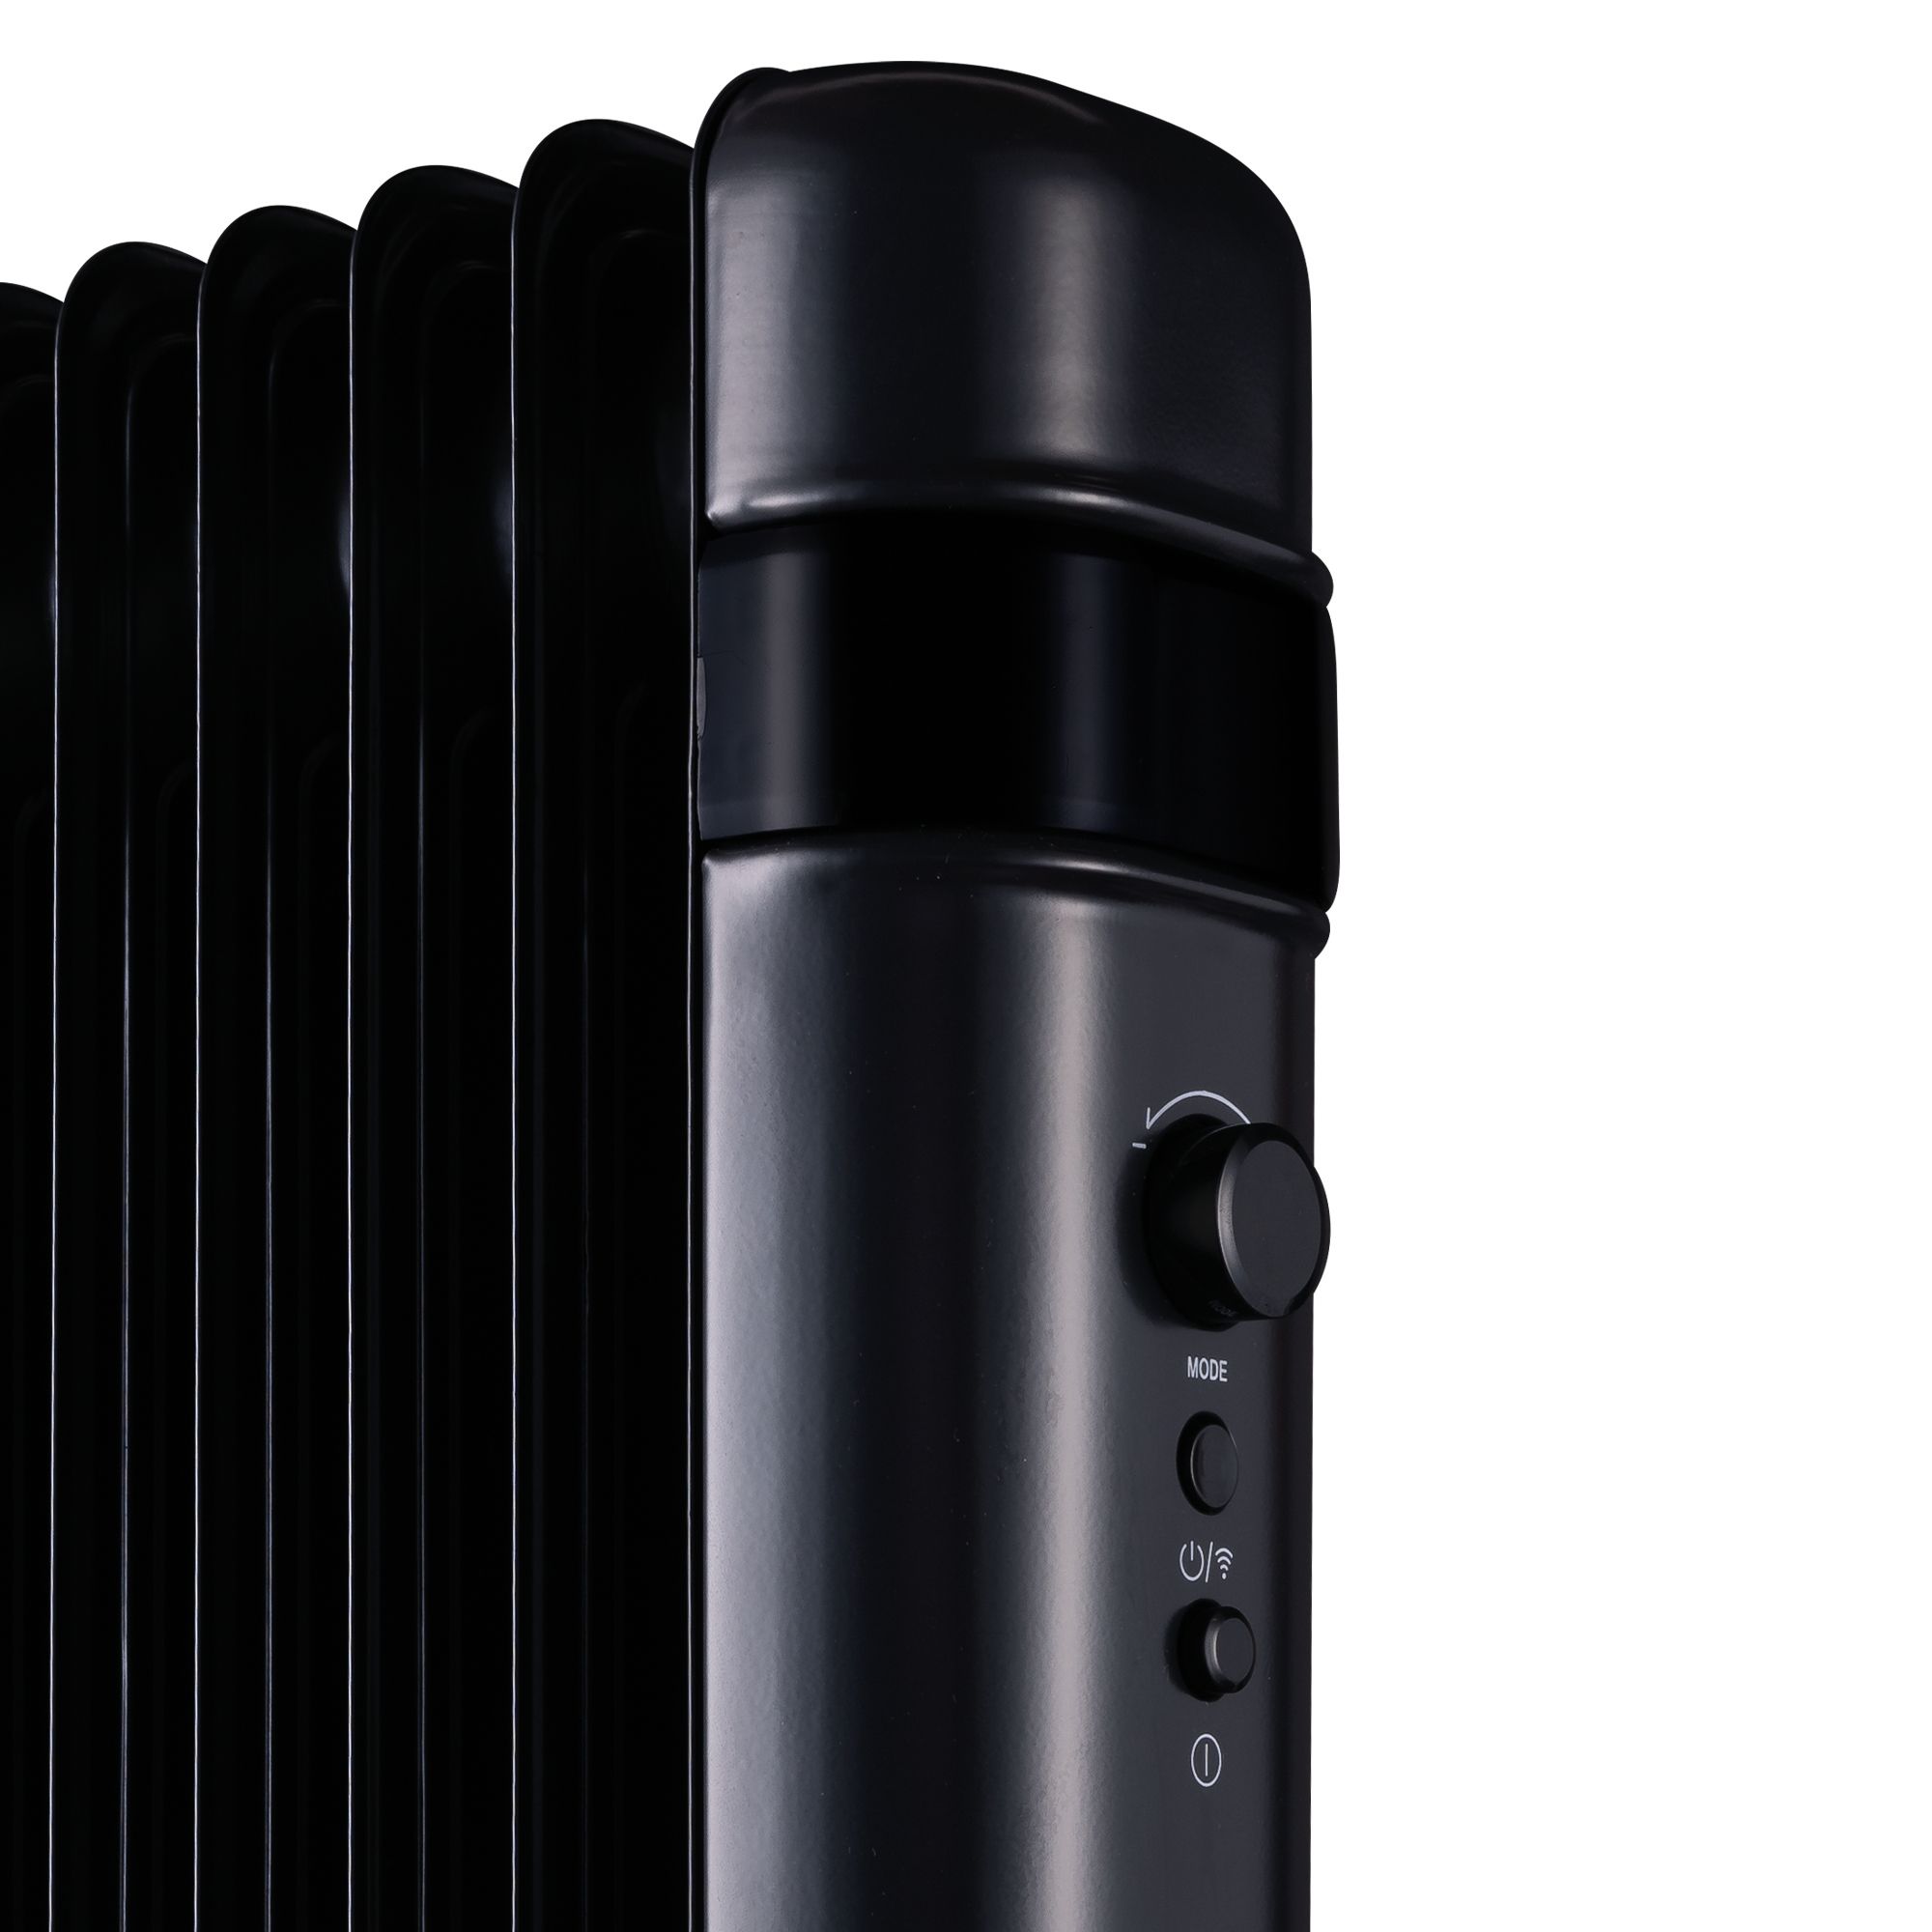 TCP Smart 220-240V 2kW Black Oil-filled radiator